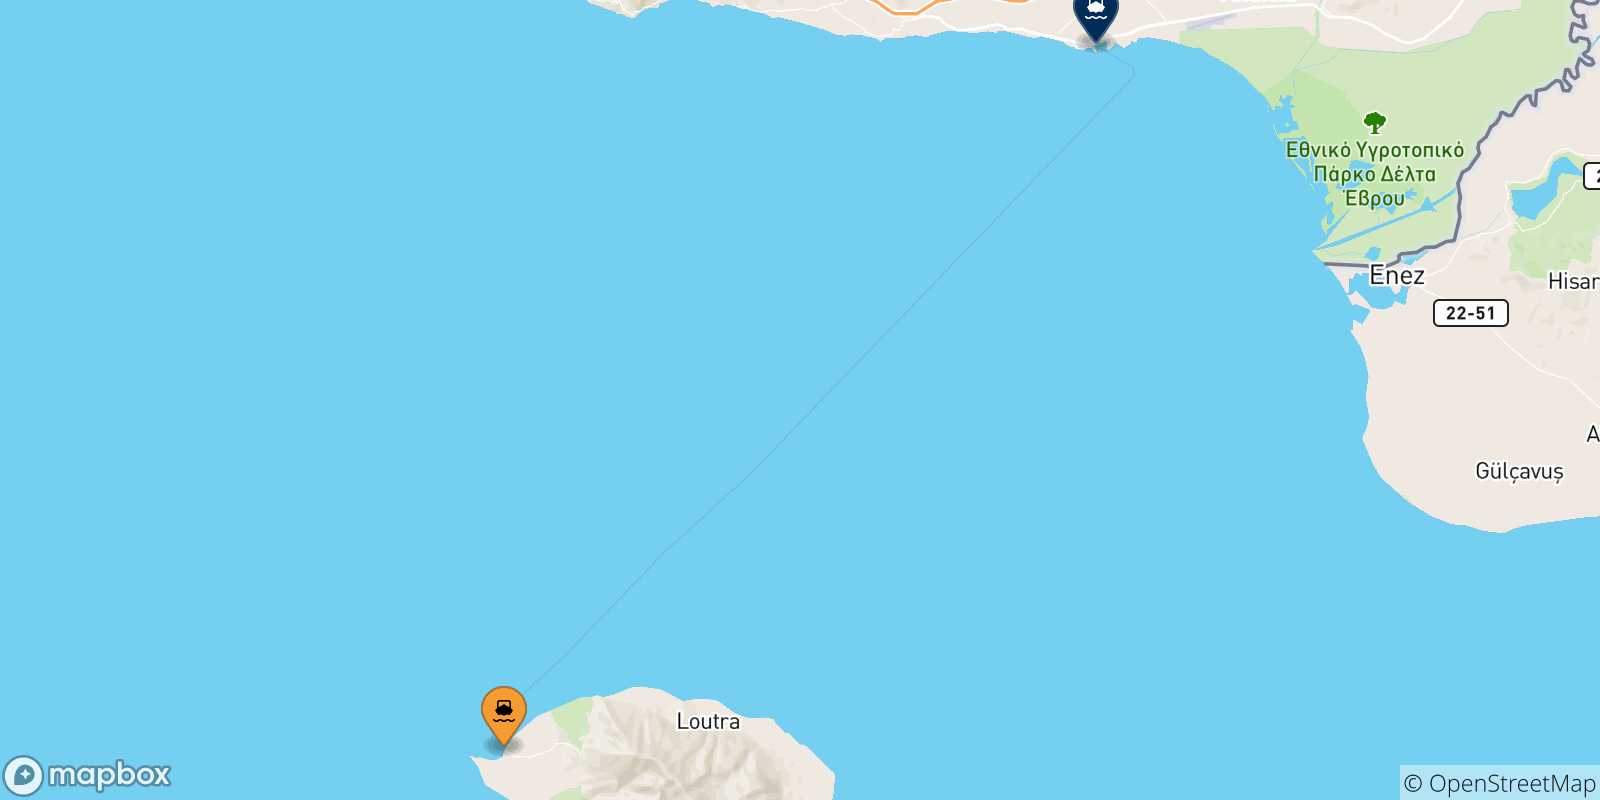 Mapa de las posibles rutas entre Samothraki y  Grecia